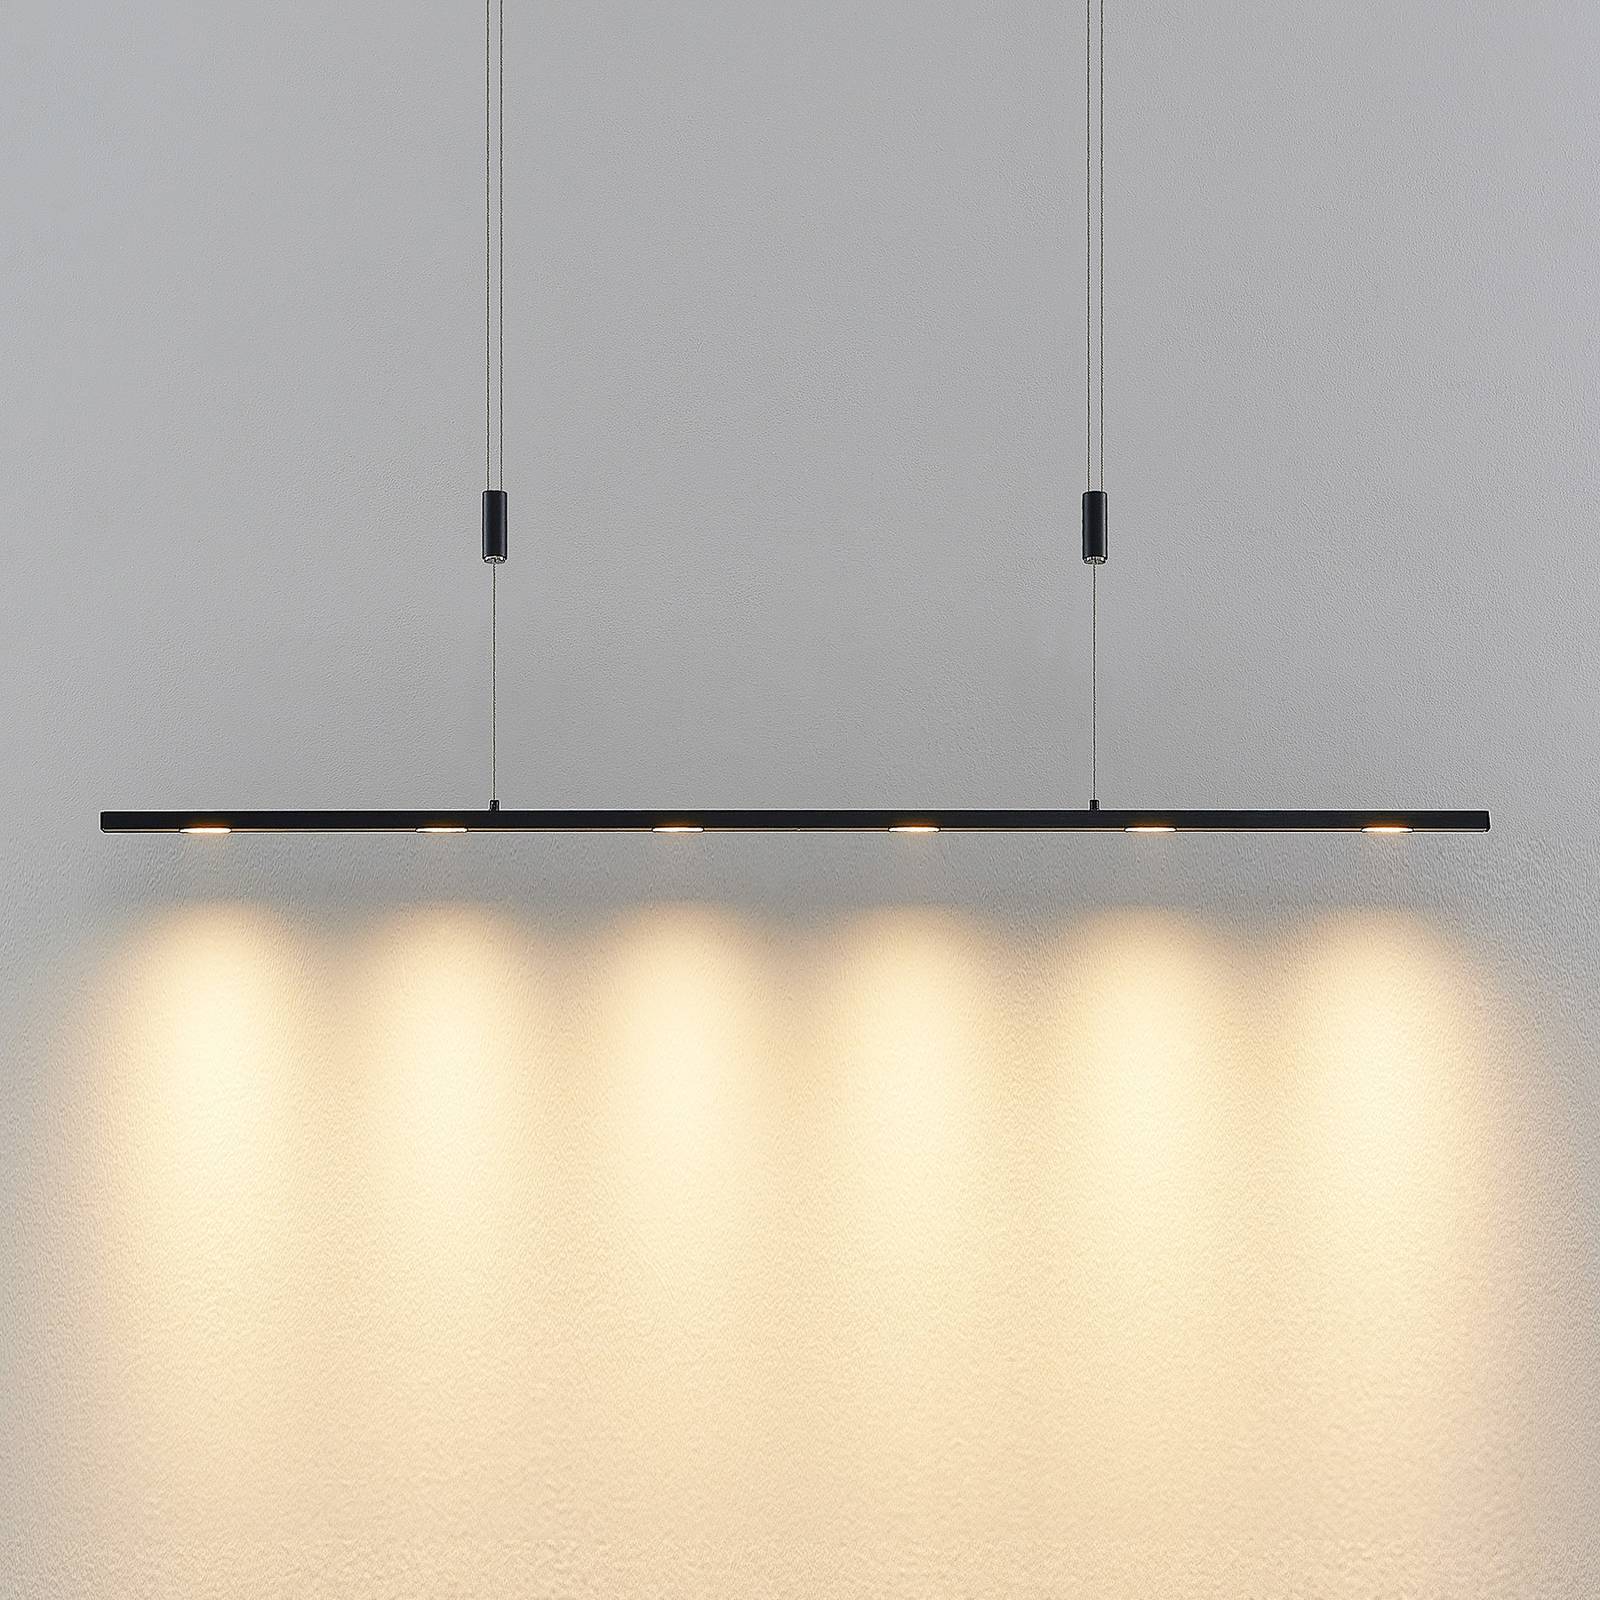 Lucande Stakato LED-Pendellampe 6fl. 120 cm lang von LUCANDE